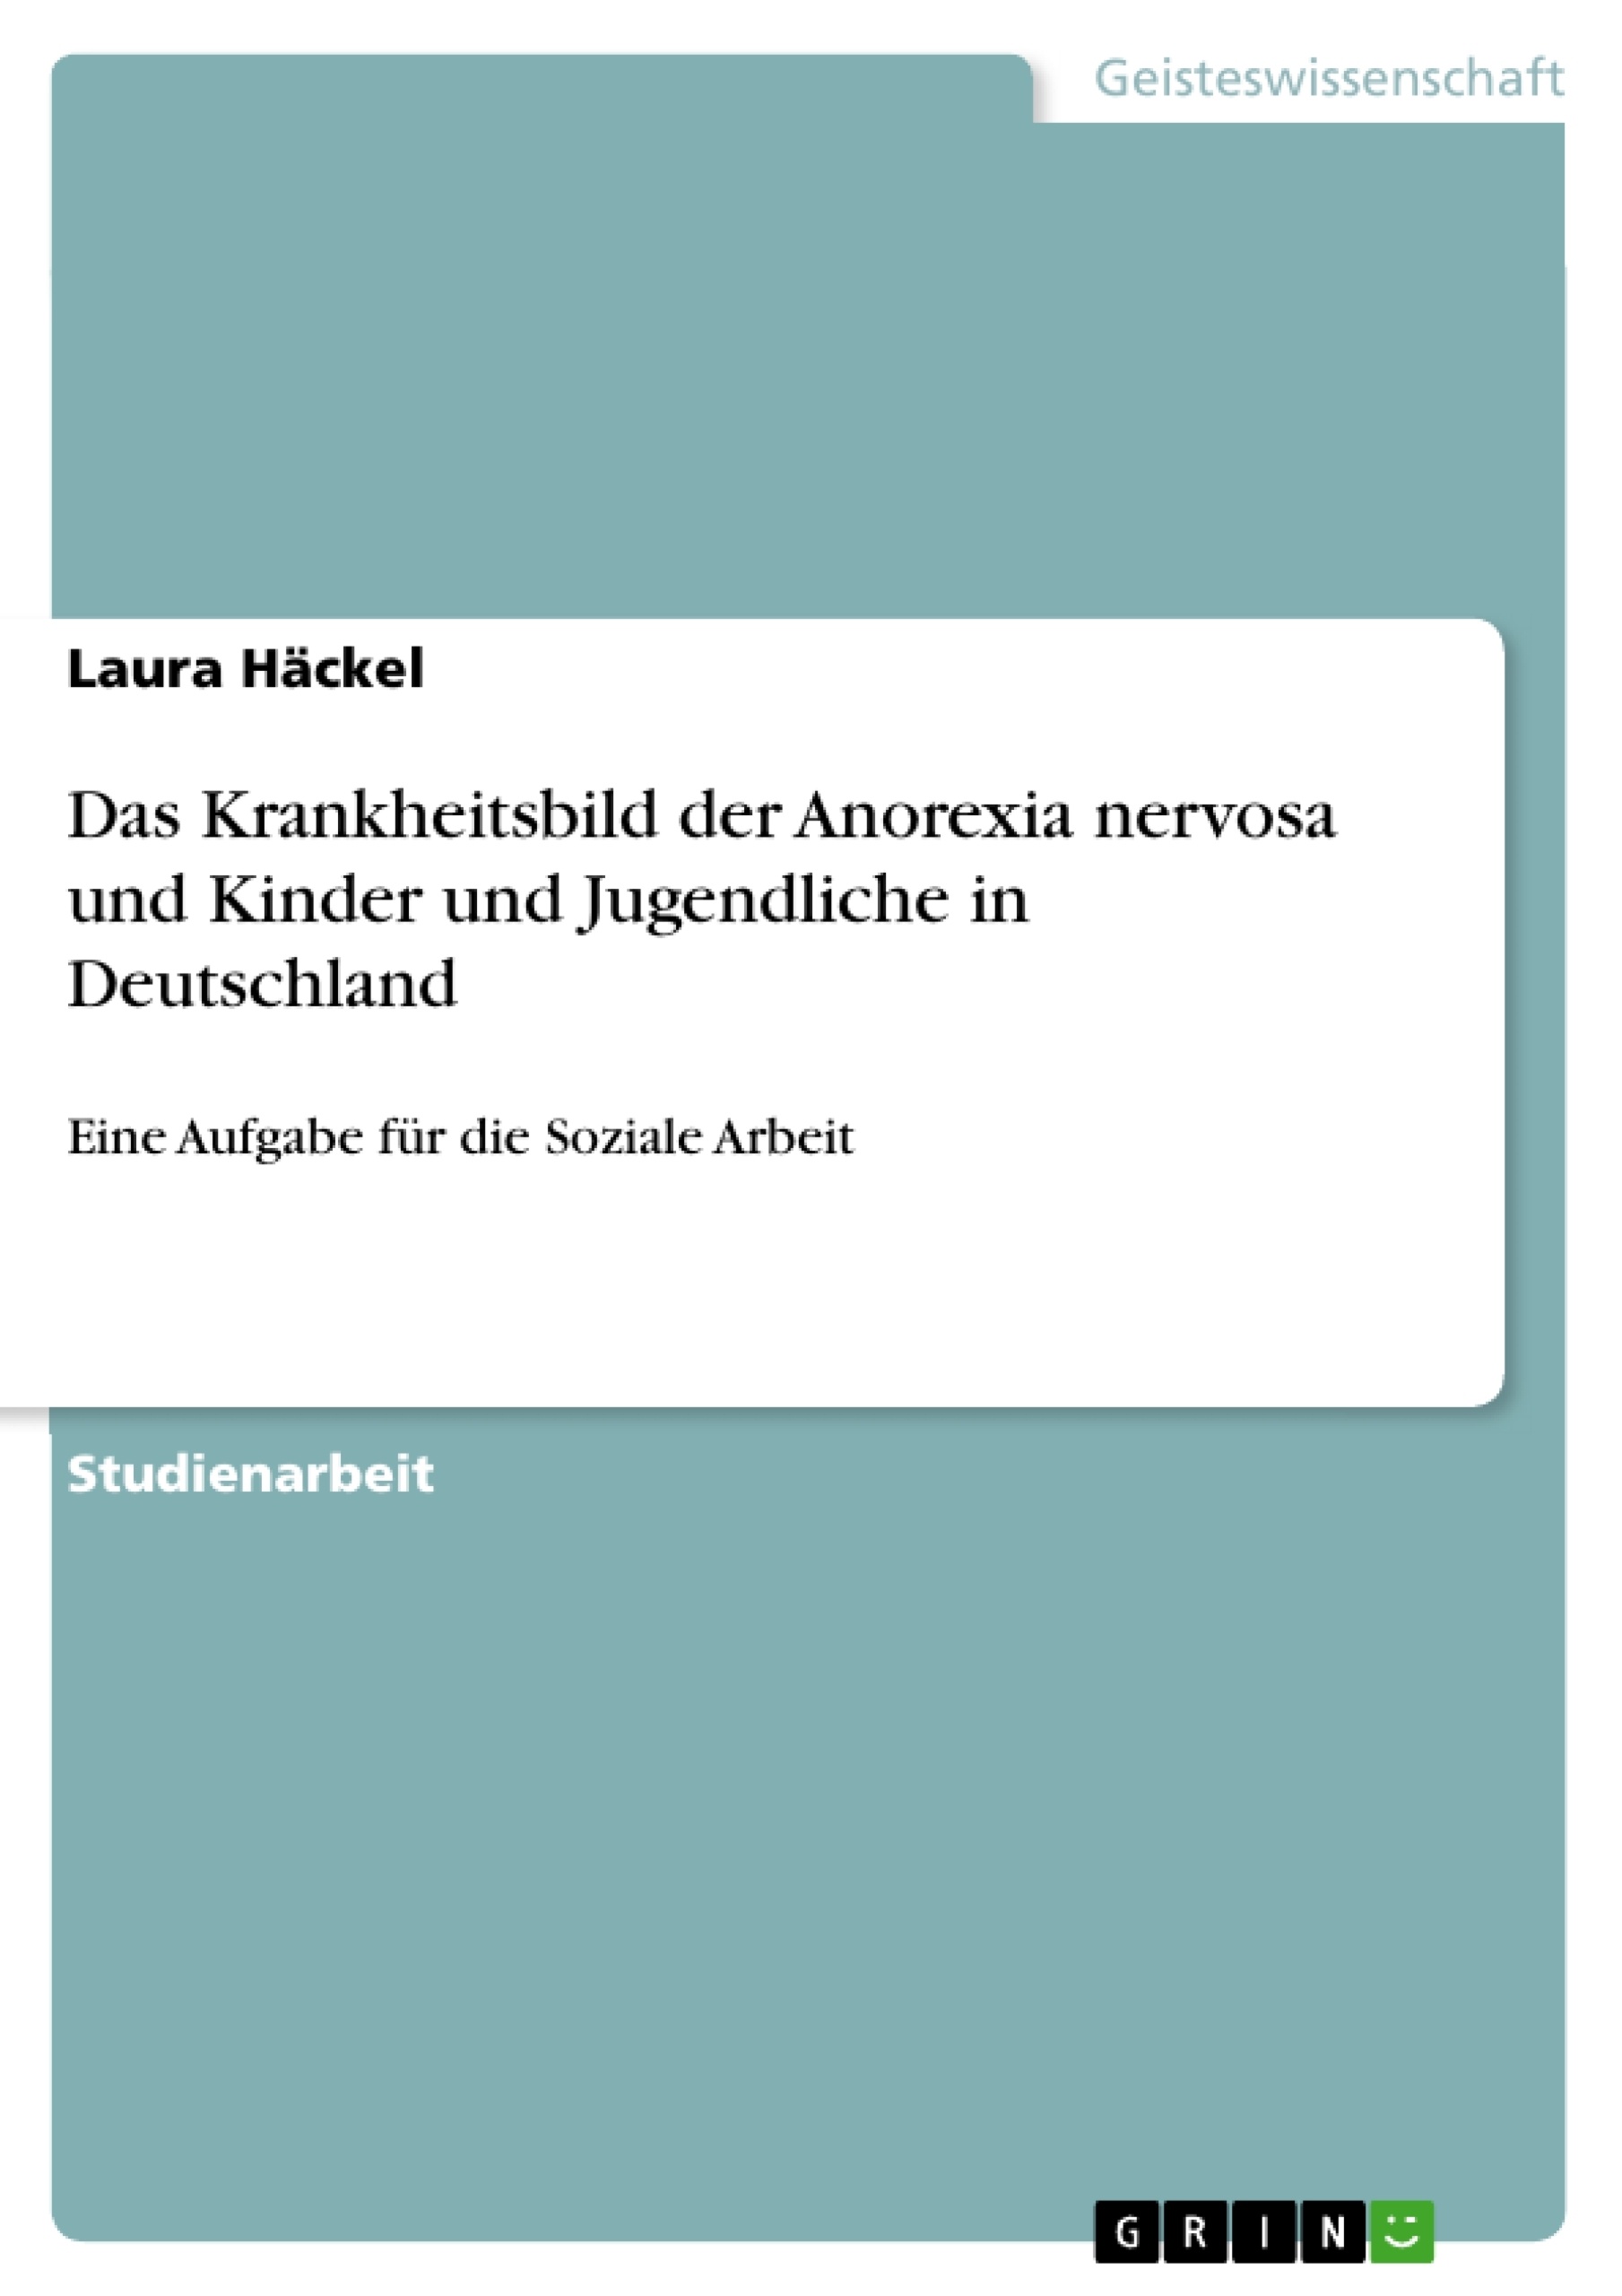 Titel: Das Krankheitsbild der Anorexia nervosa und Kinder und Jugendliche in Deutschland 